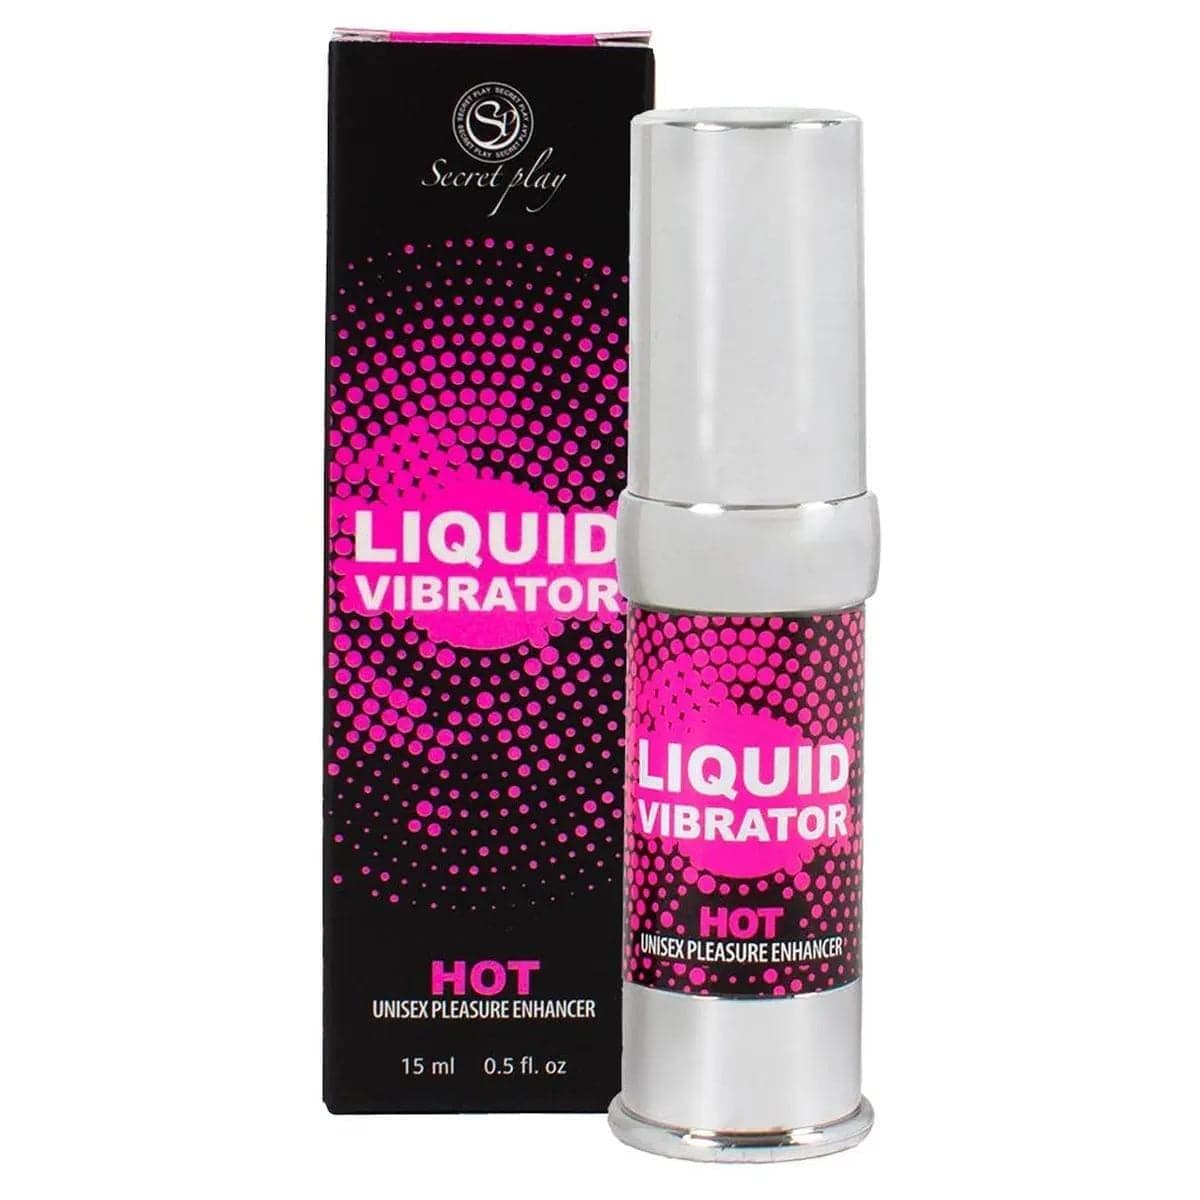 Gel Vibrador Liquido com aroma a Morango e efeito Calor 15ml  Secret-Play   